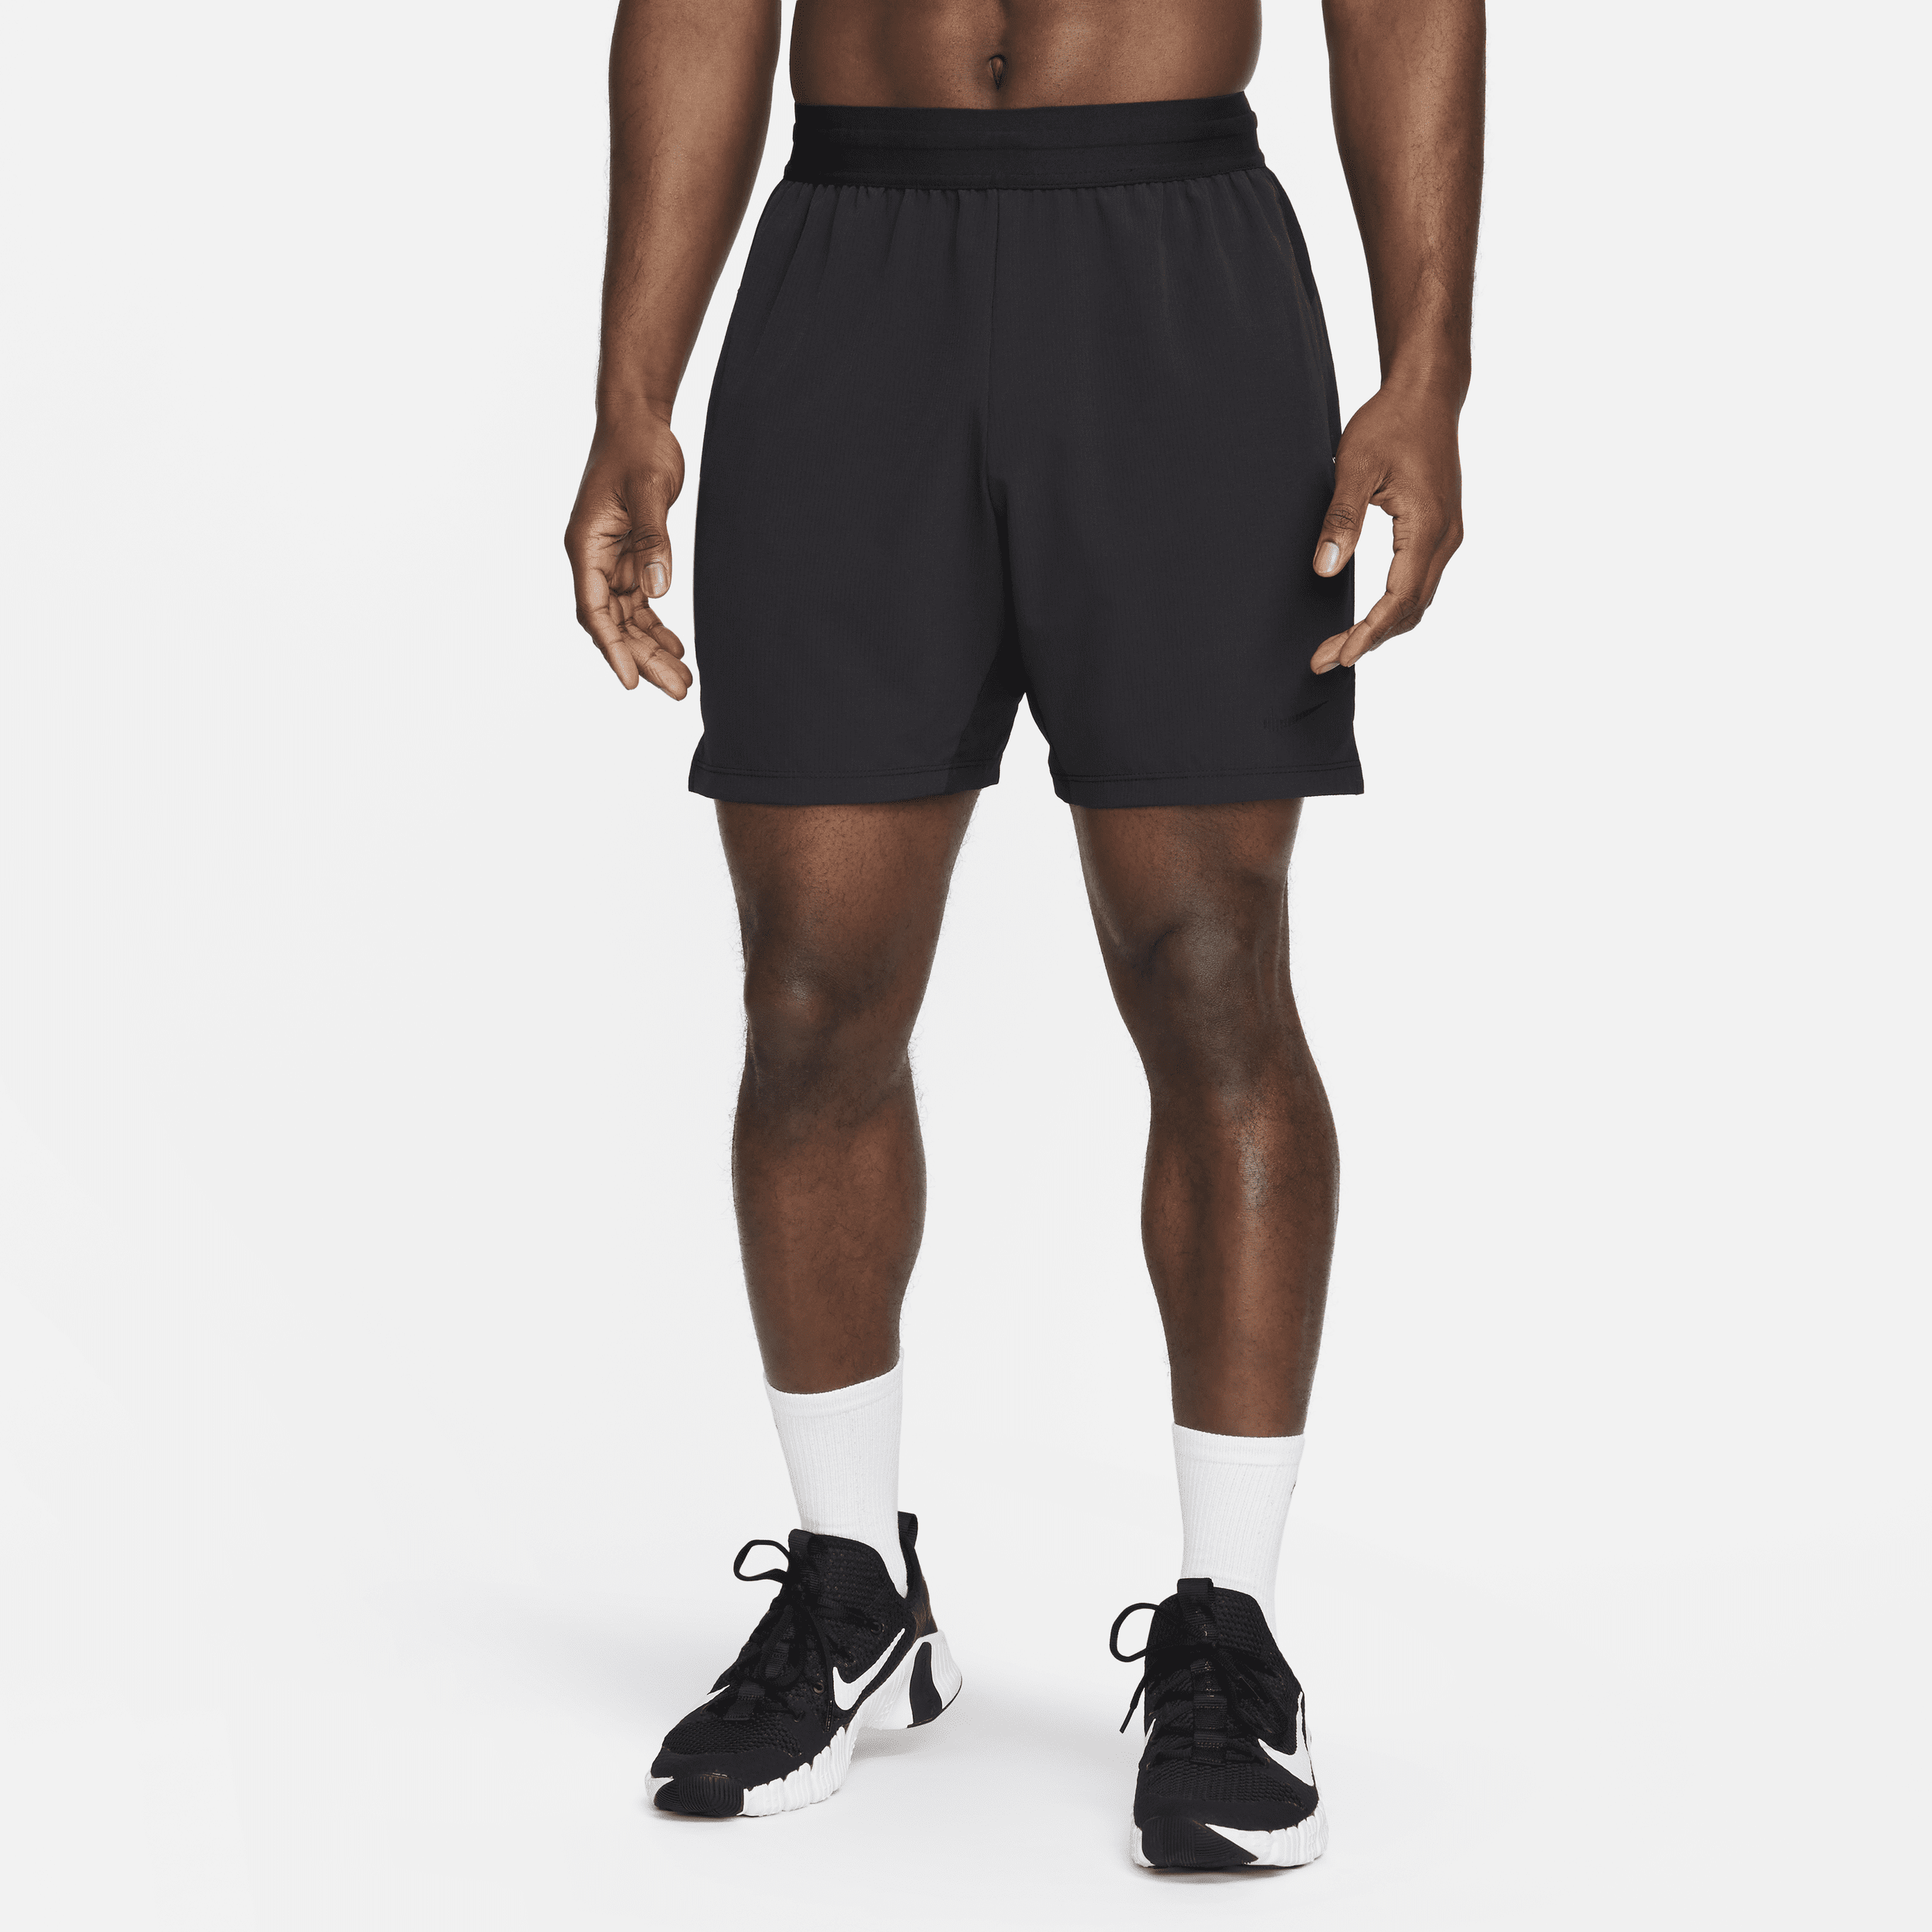 Nike Flex Rep 4.0 Pantalón corto deportivo Dri-FIT de 18 cm sin forro - Hombre - Negro